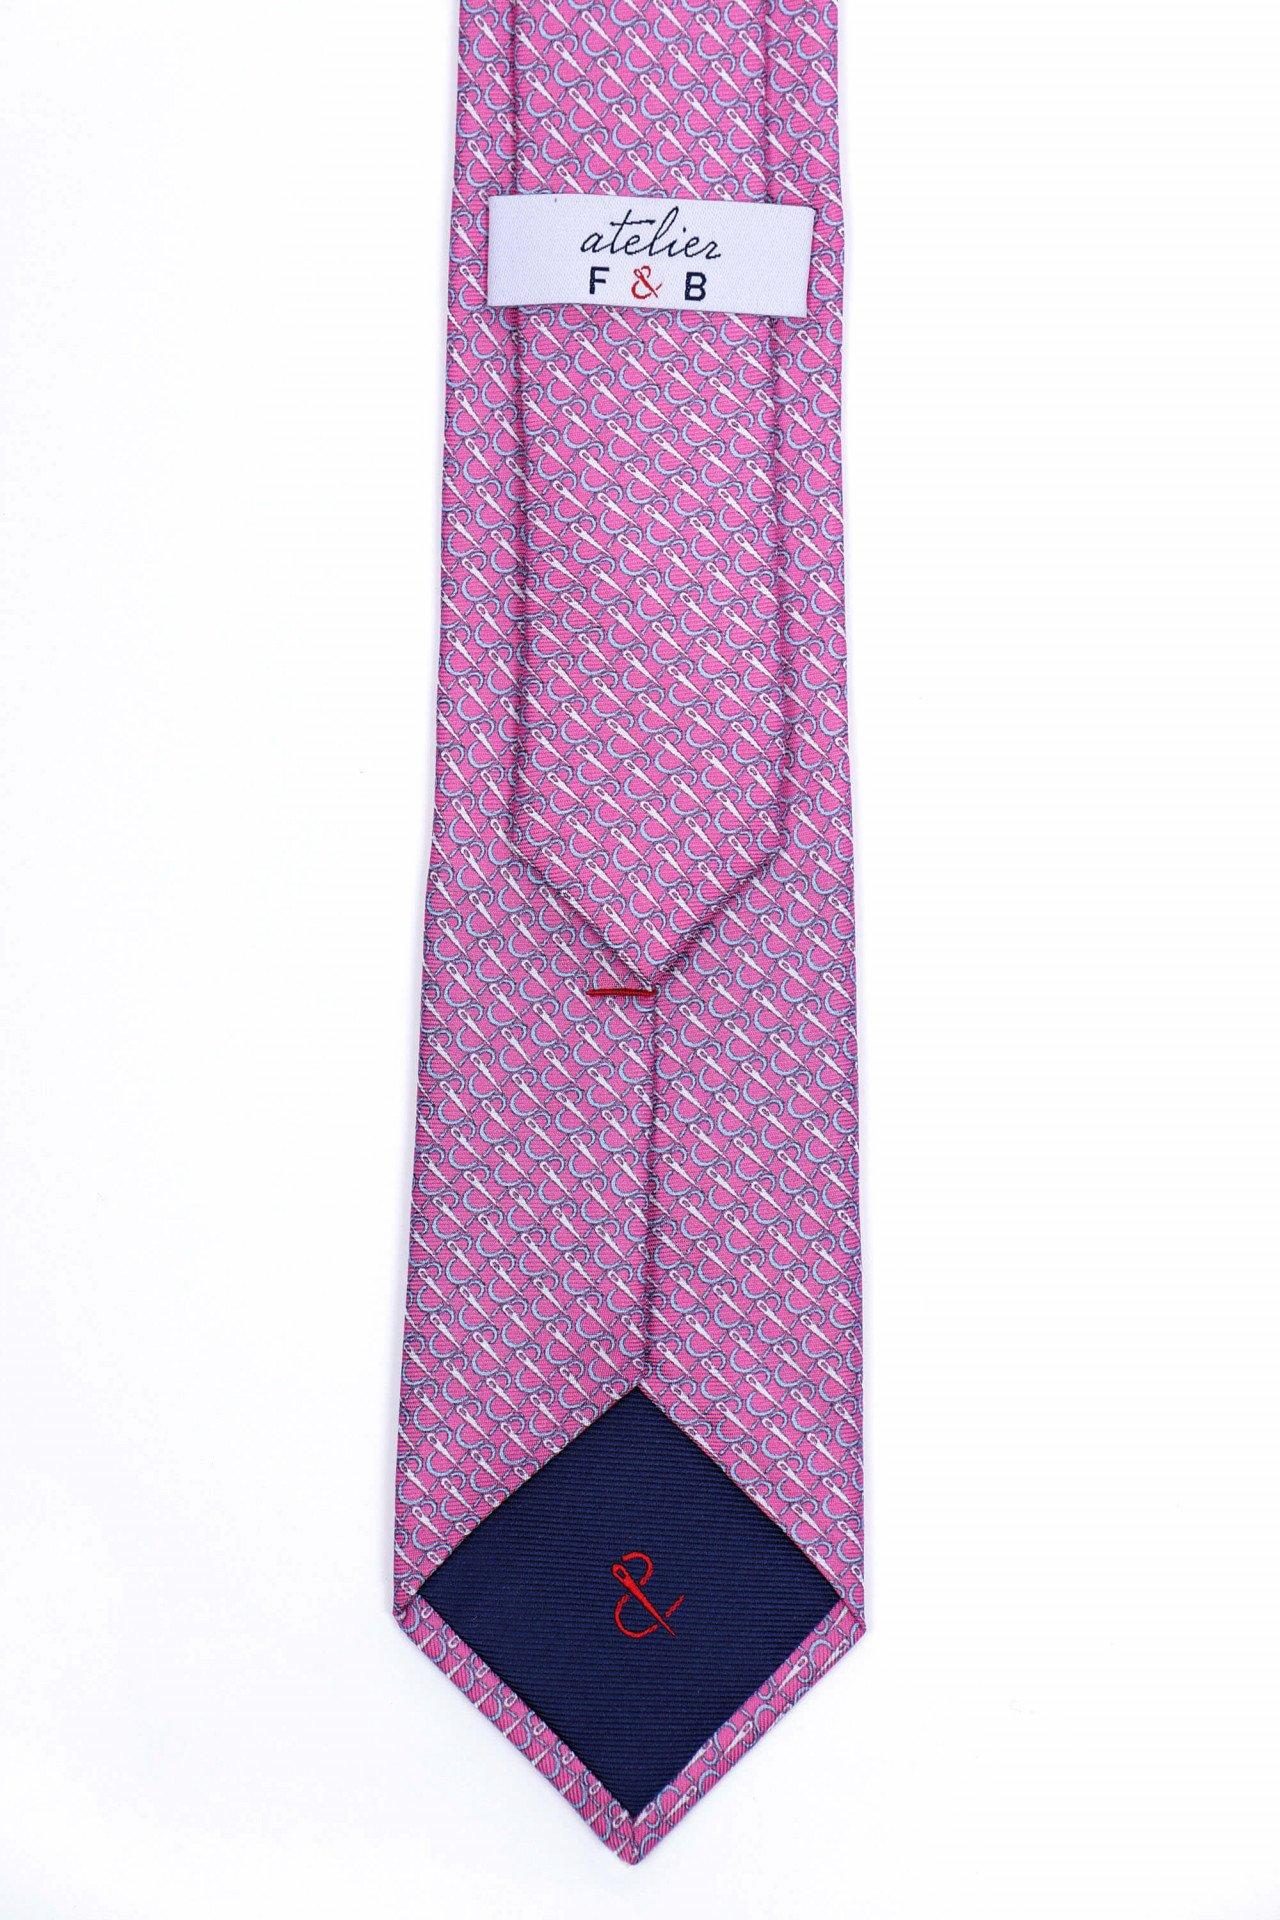 Atelier F&B  Dschungelmotiv-Krawatte aus Seide und Baumwolle 